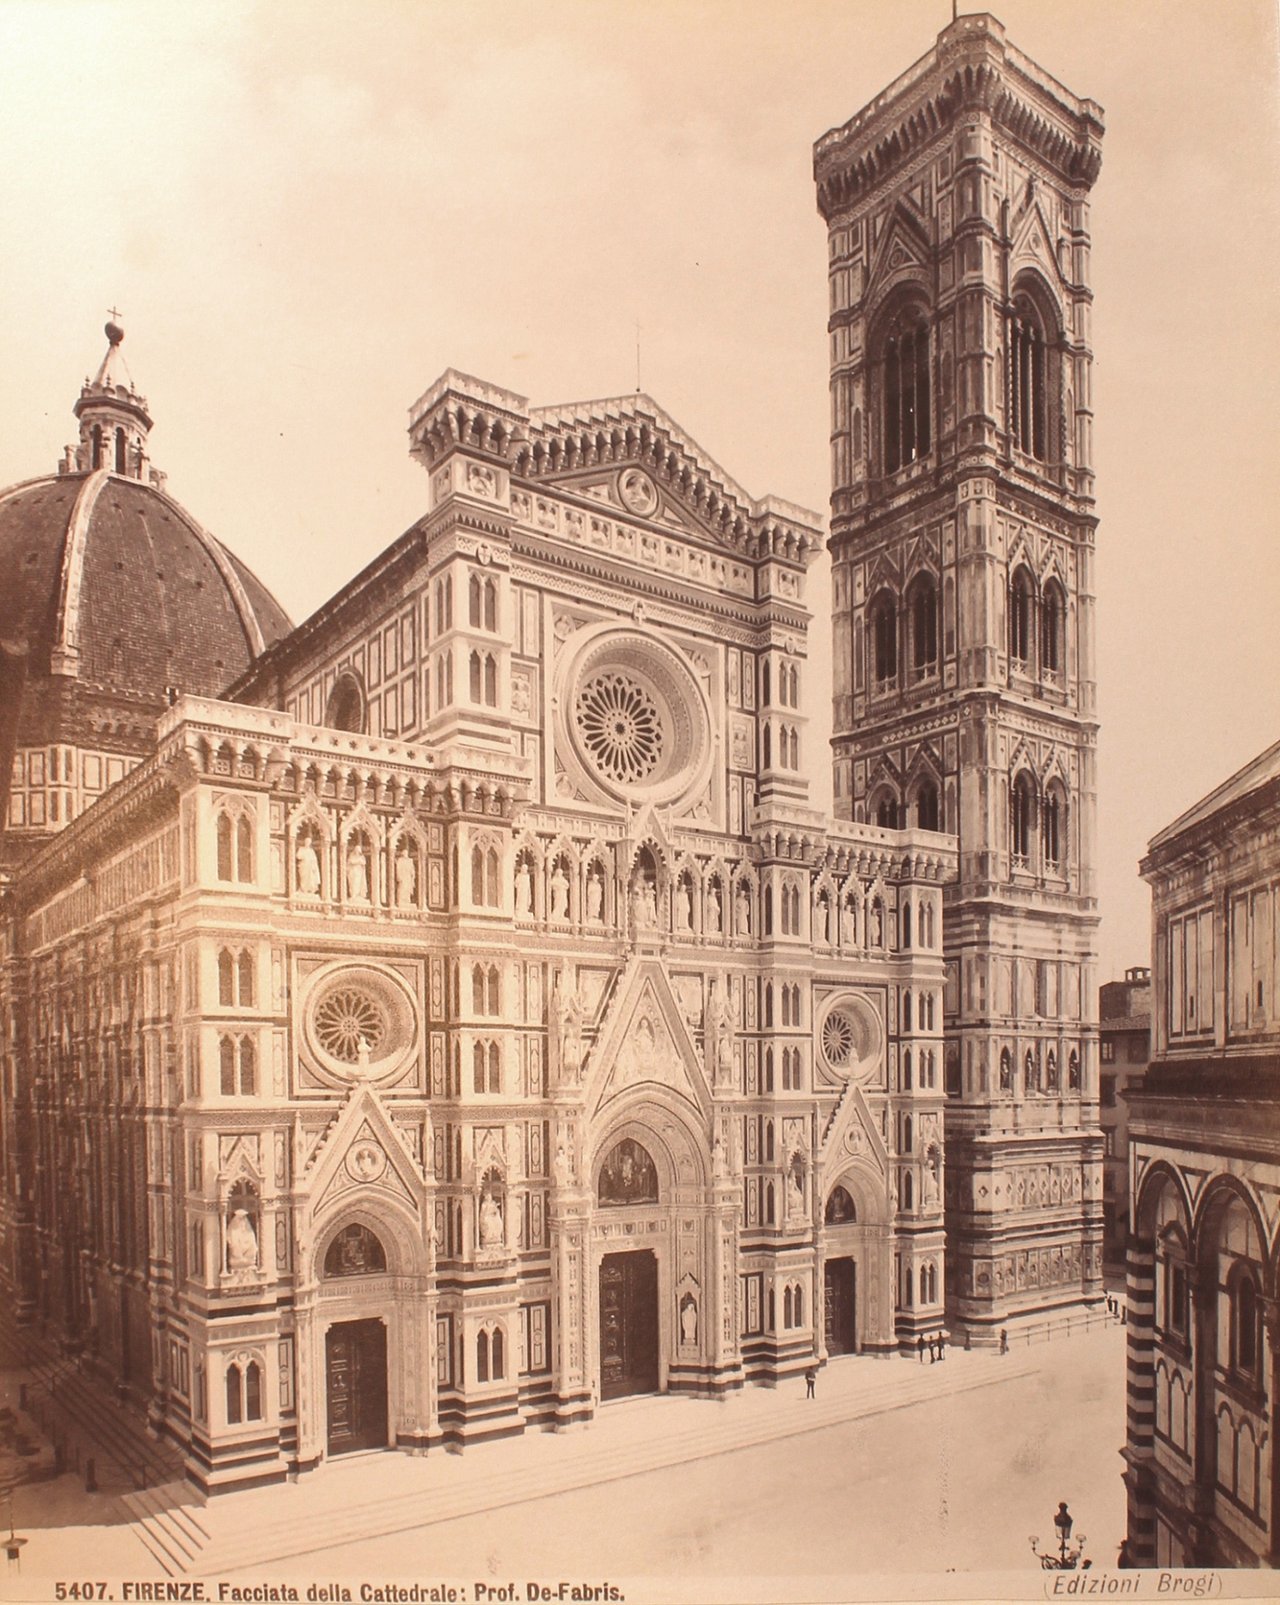 Historisches Foto der frisch umgebauten Kathedrale Santa Maria del Fiore, um 1880, fotografiert von Edizione Brogi.